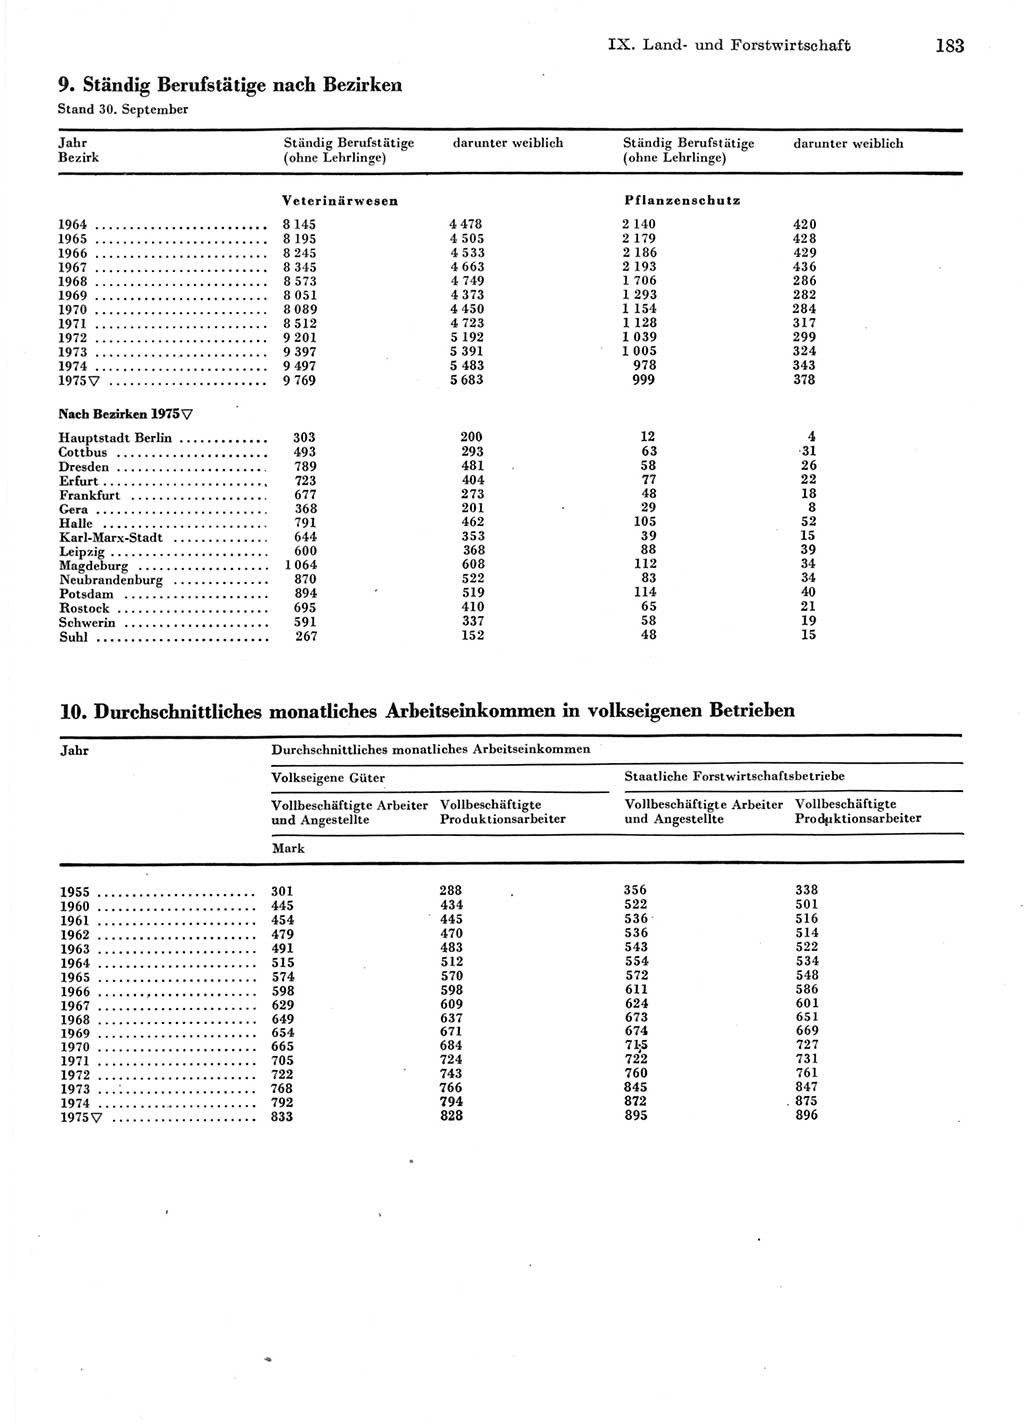 Statistisches Jahrbuch der Deutschen Demokratischen Republik (DDR) 1976, Seite 183 (Stat. Jb. DDR 1976, S. 183)